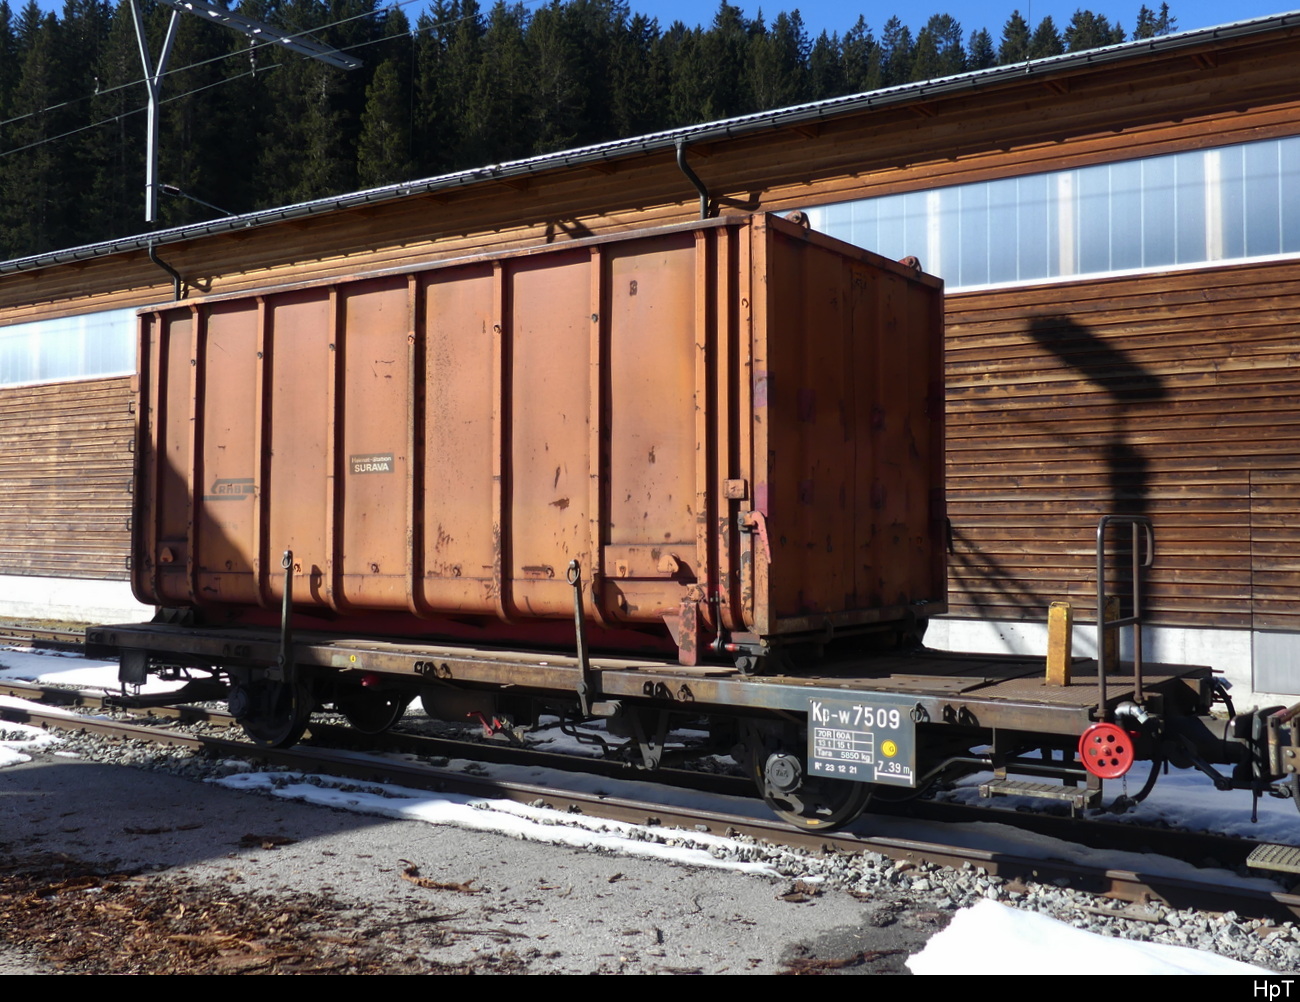 RhB - Güterwagen Kp-w  7509 mit Container abgestellt in Arosa am 05.03.2023